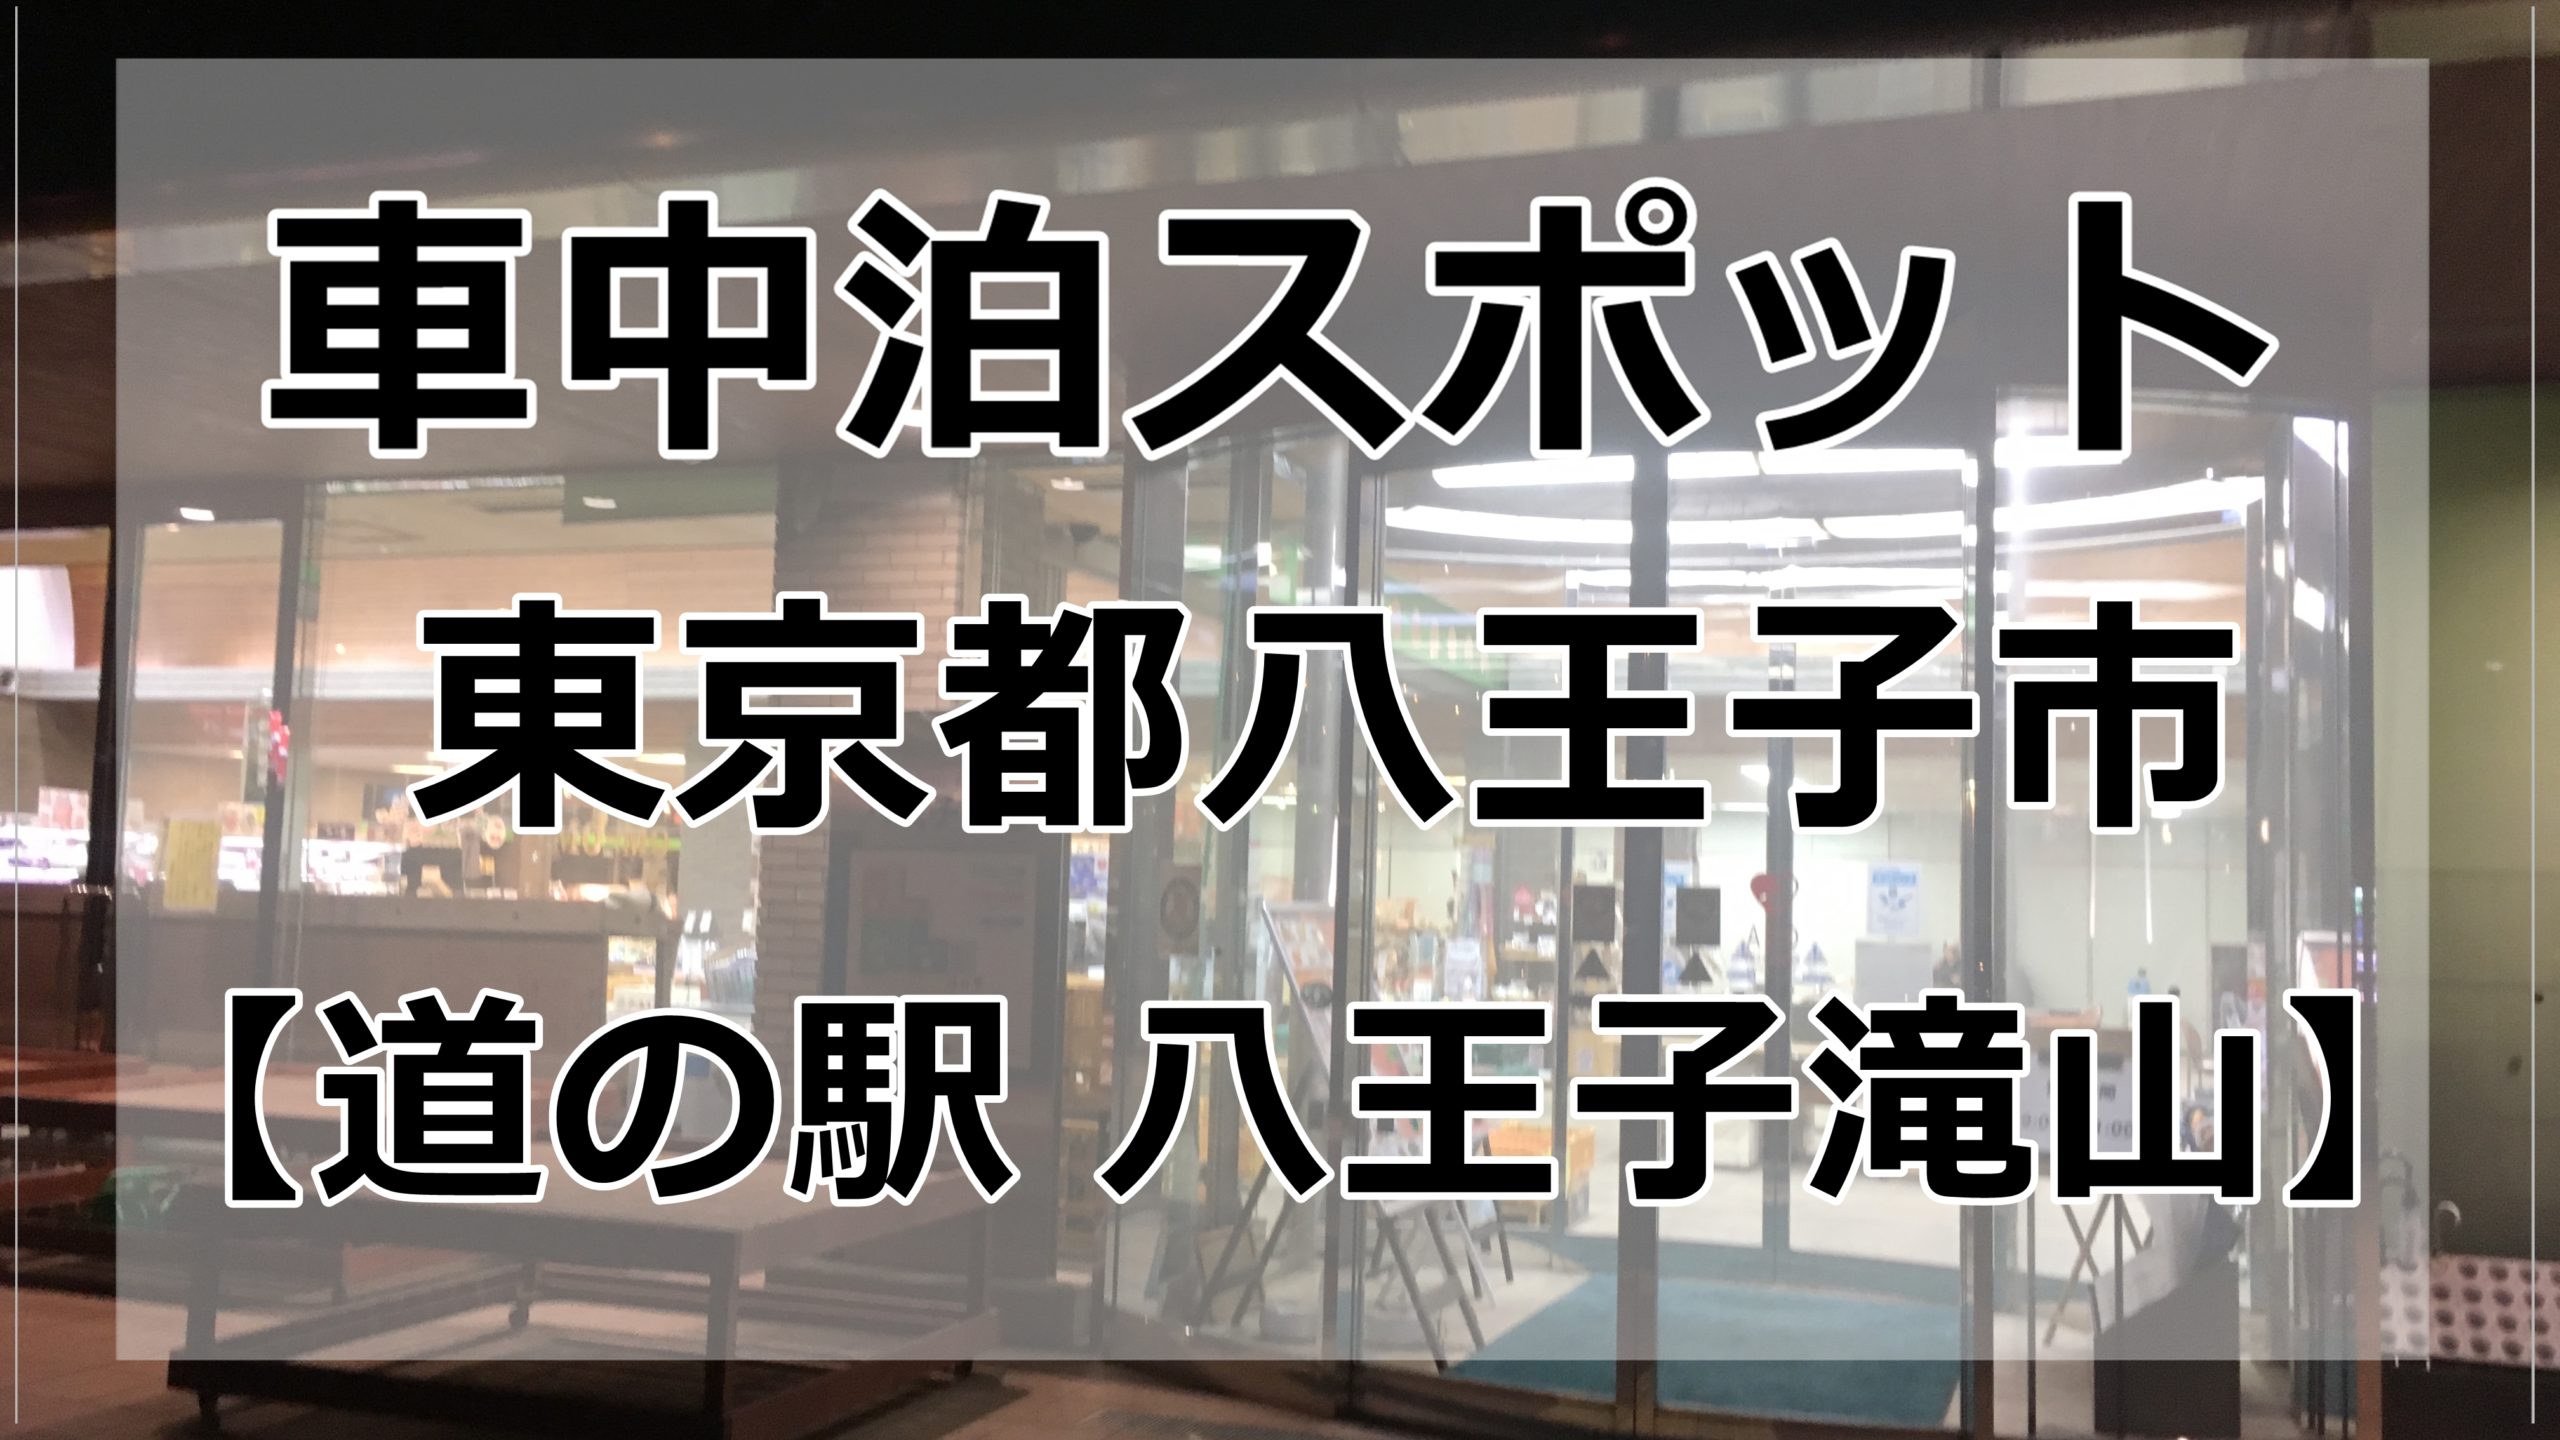 東京都内 道の駅八王子滝山で車中泊してみた 第二駐車場写真有 車中泊女子 初心者向けバンライフブログ